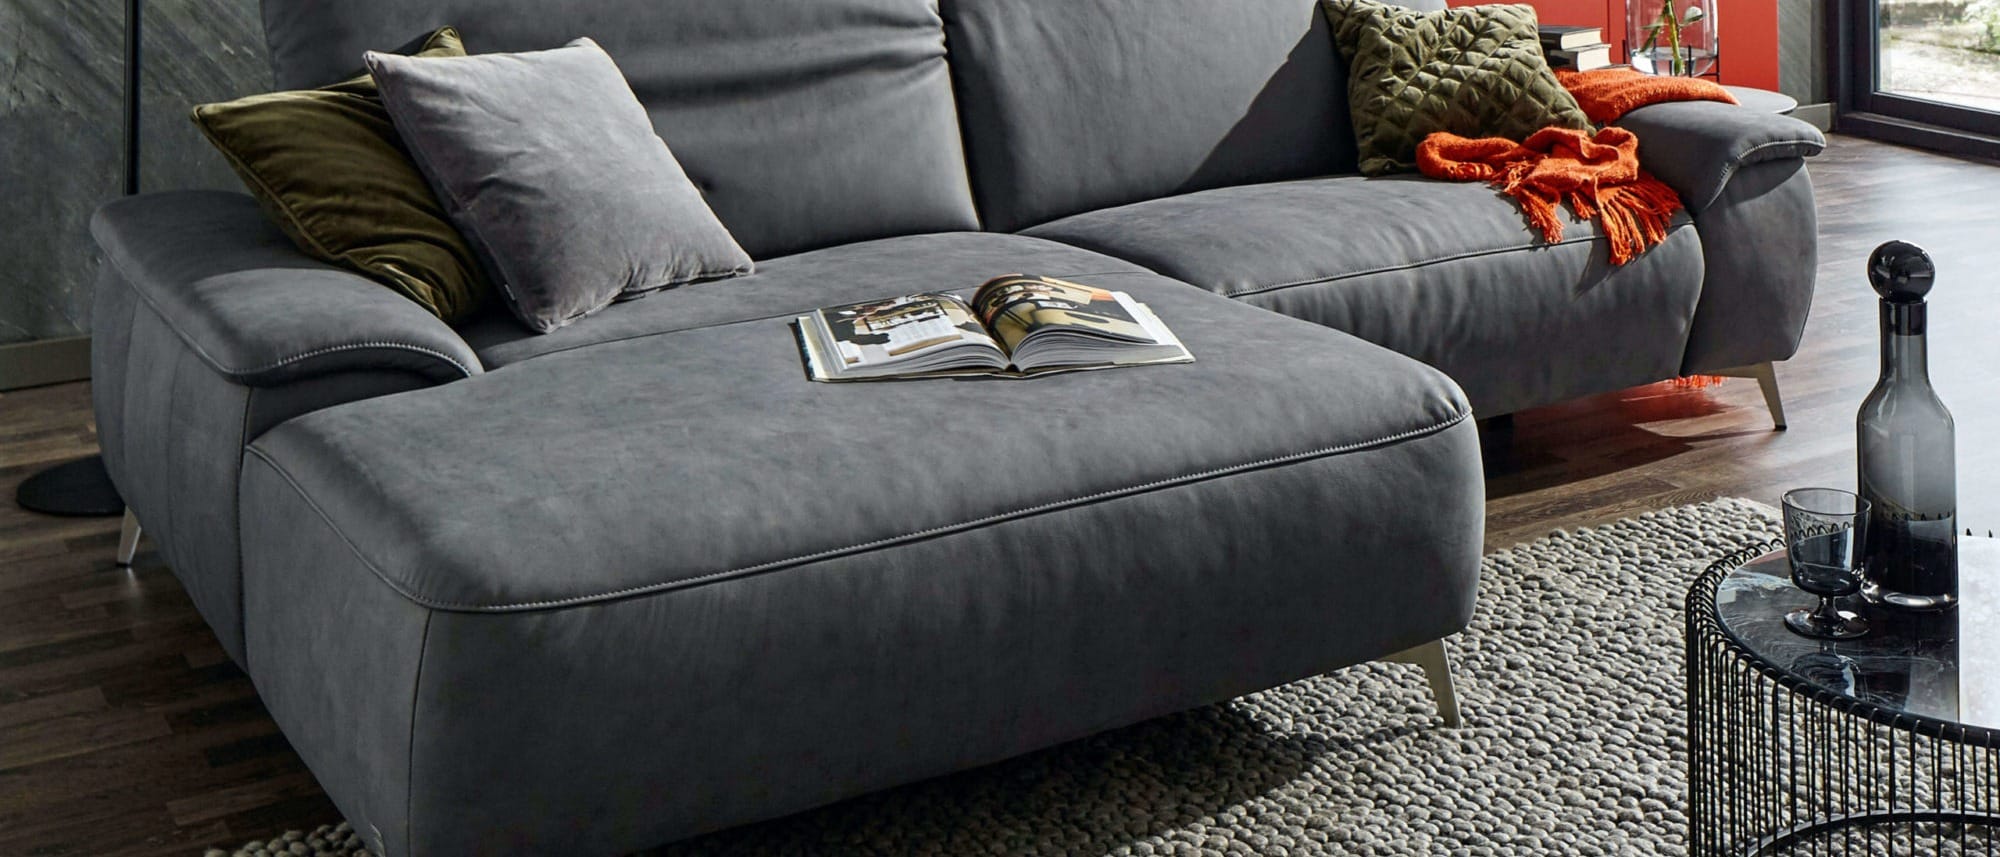 Gemütliches Leder-Sofa. Pflegetipps und Ratgeber zur Haltbarkeit von Leder